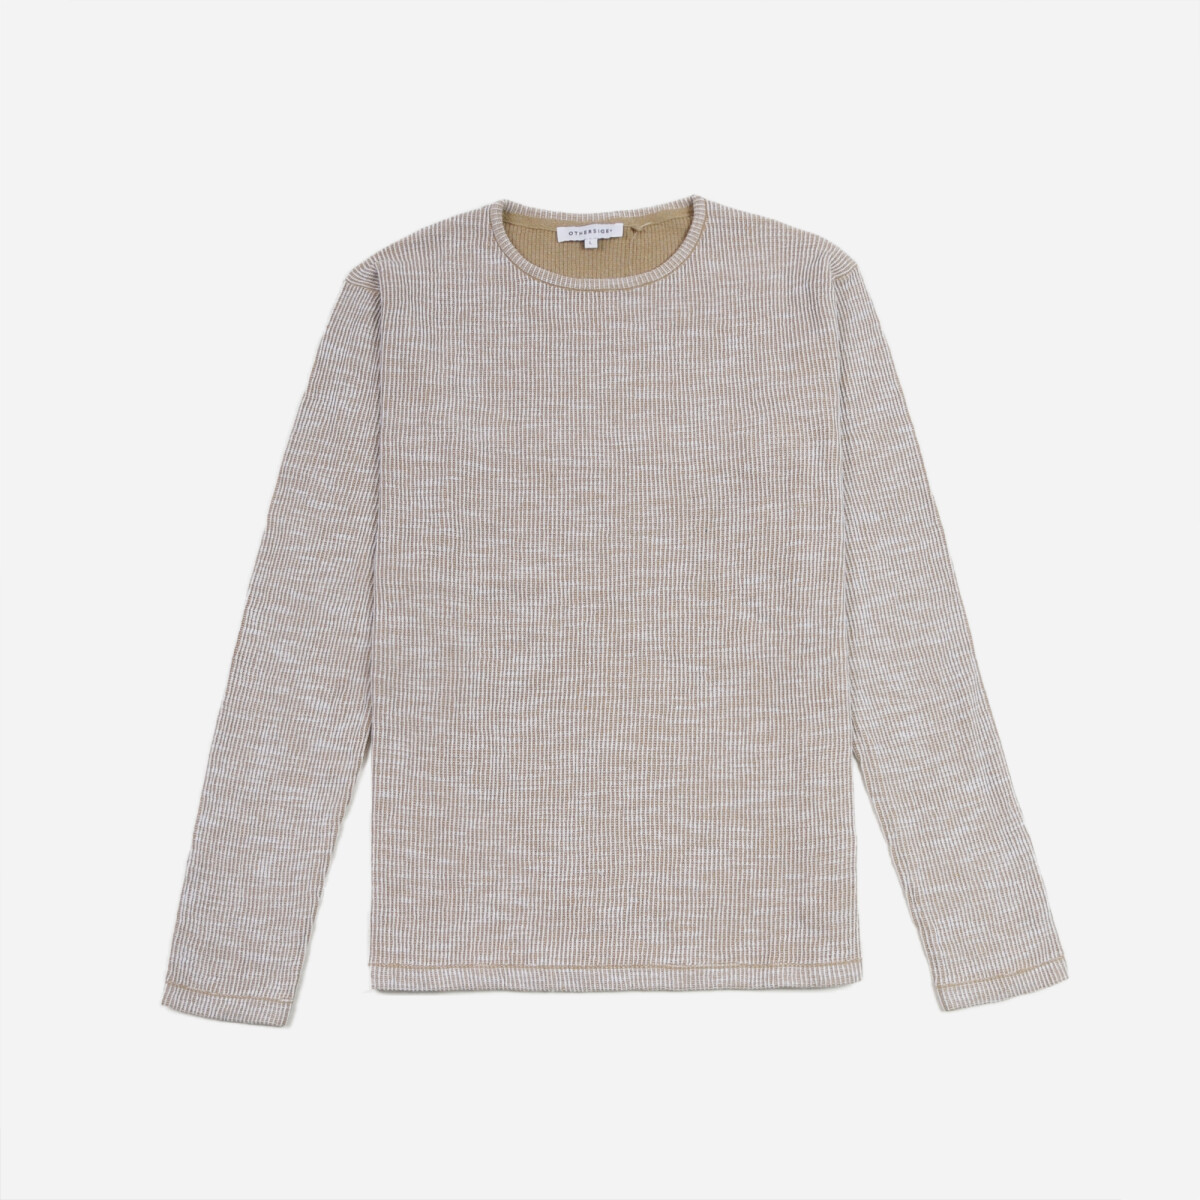 Sweater jaspeado - Hombre - BEIGE 